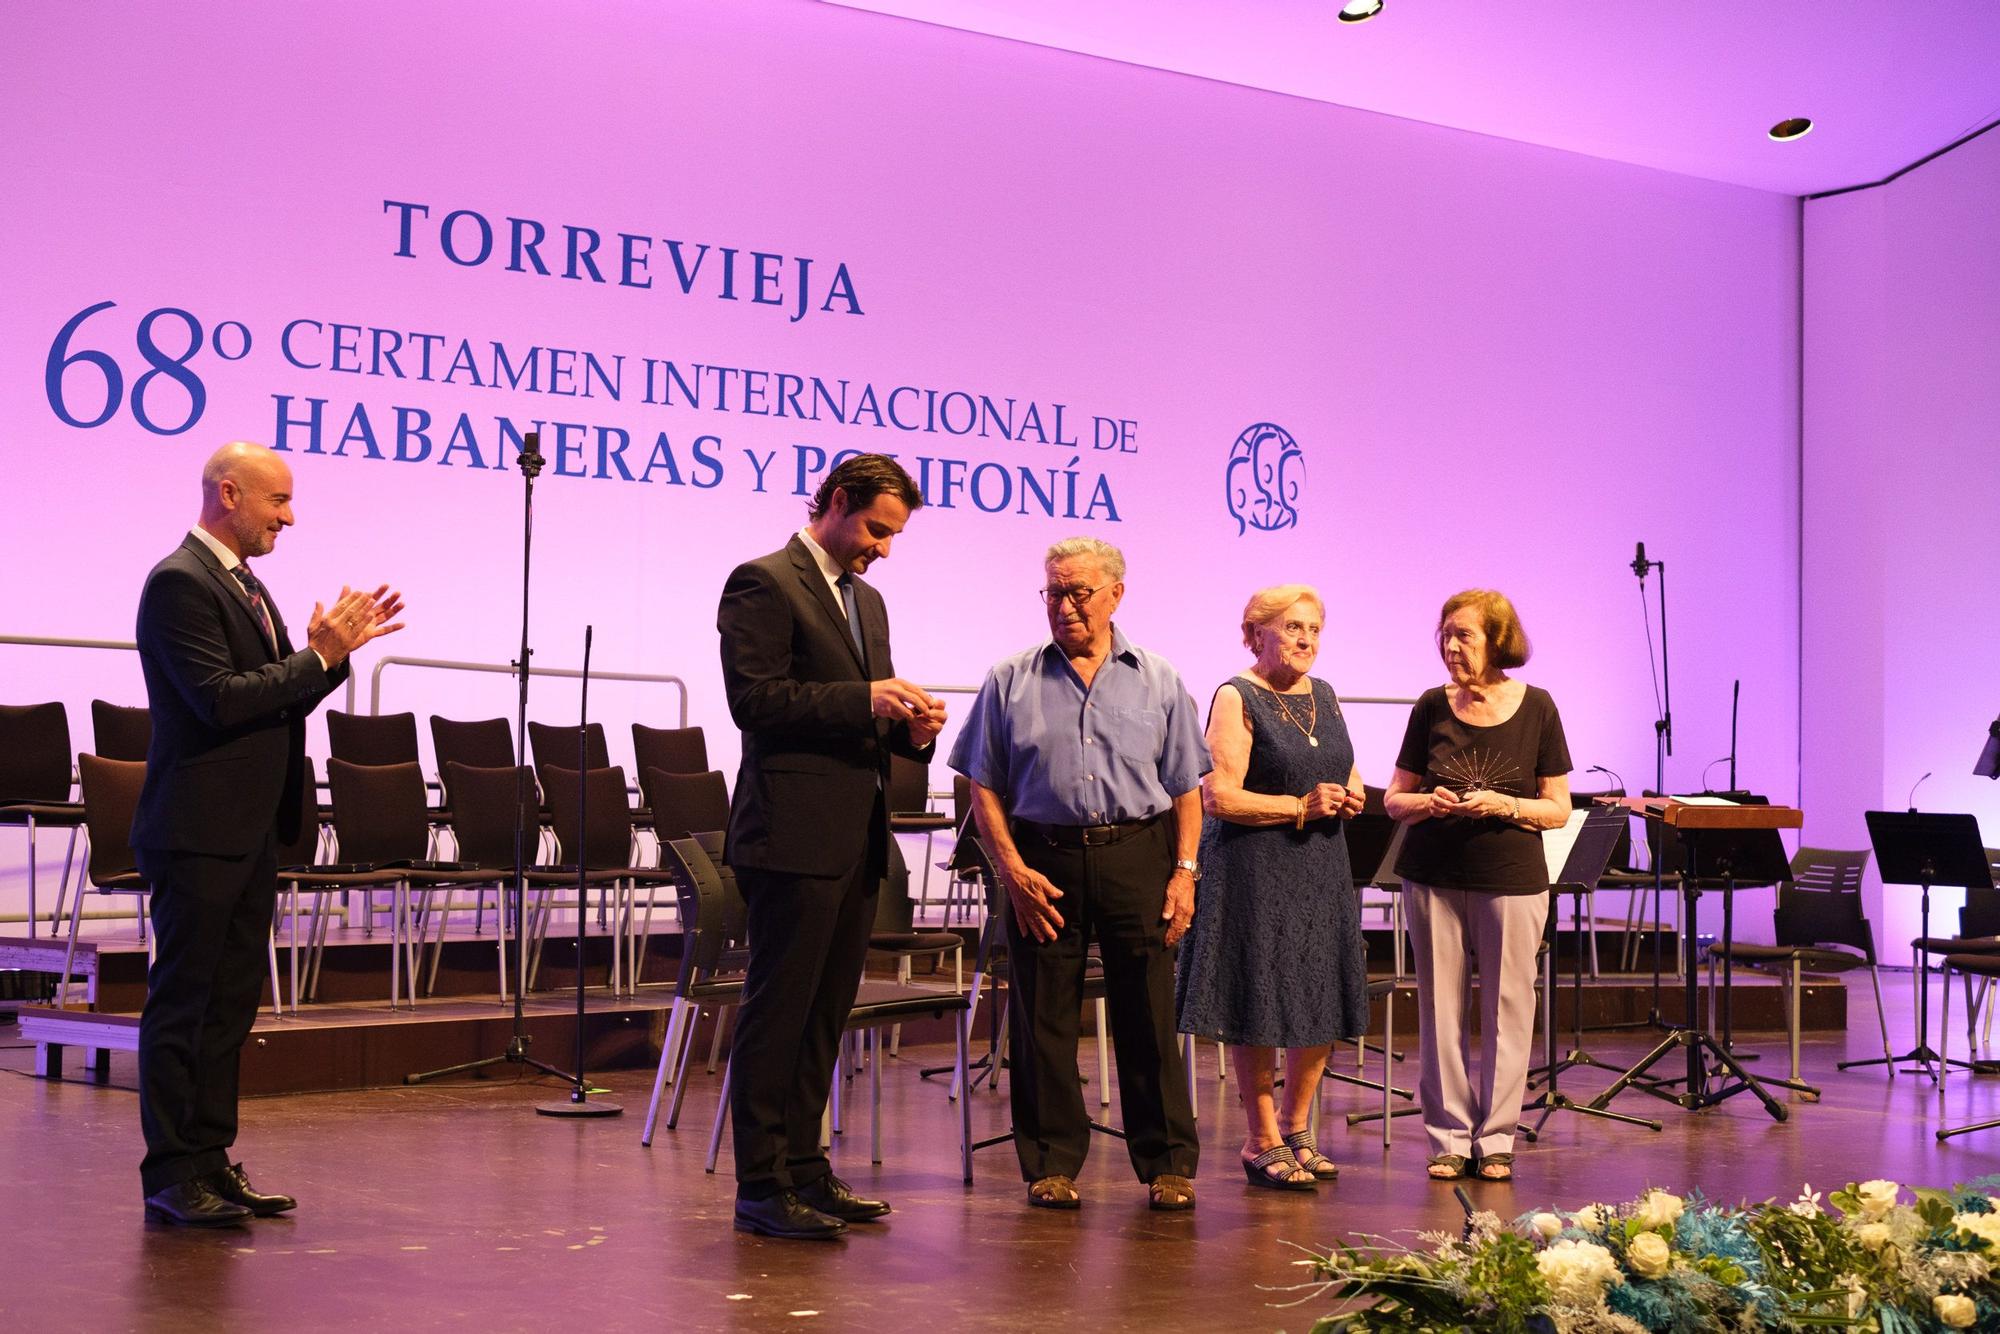 Velada inaugural del Certamen Internacional de Habaneras y Polifonía de Torrevieja